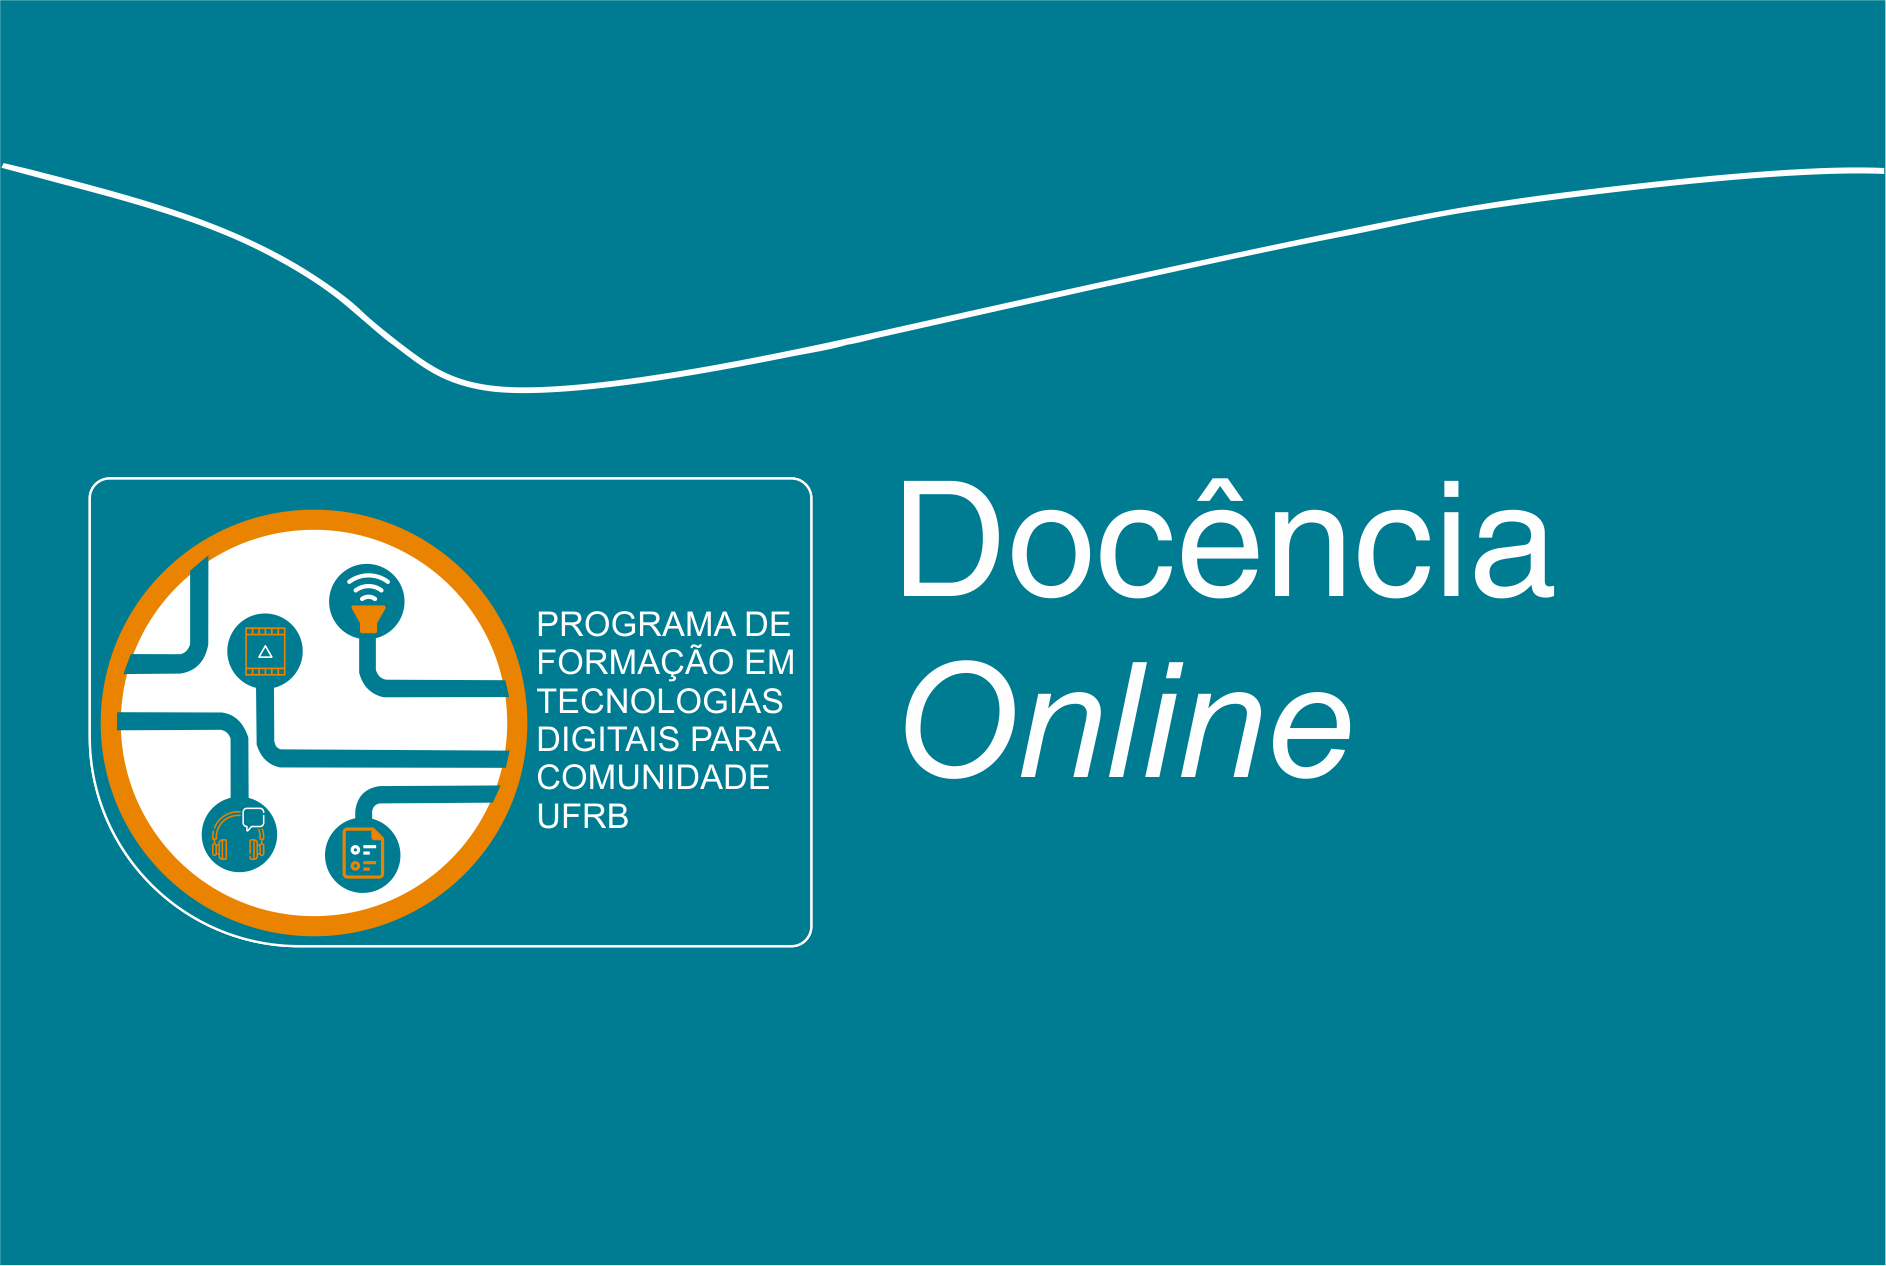 Docência Online